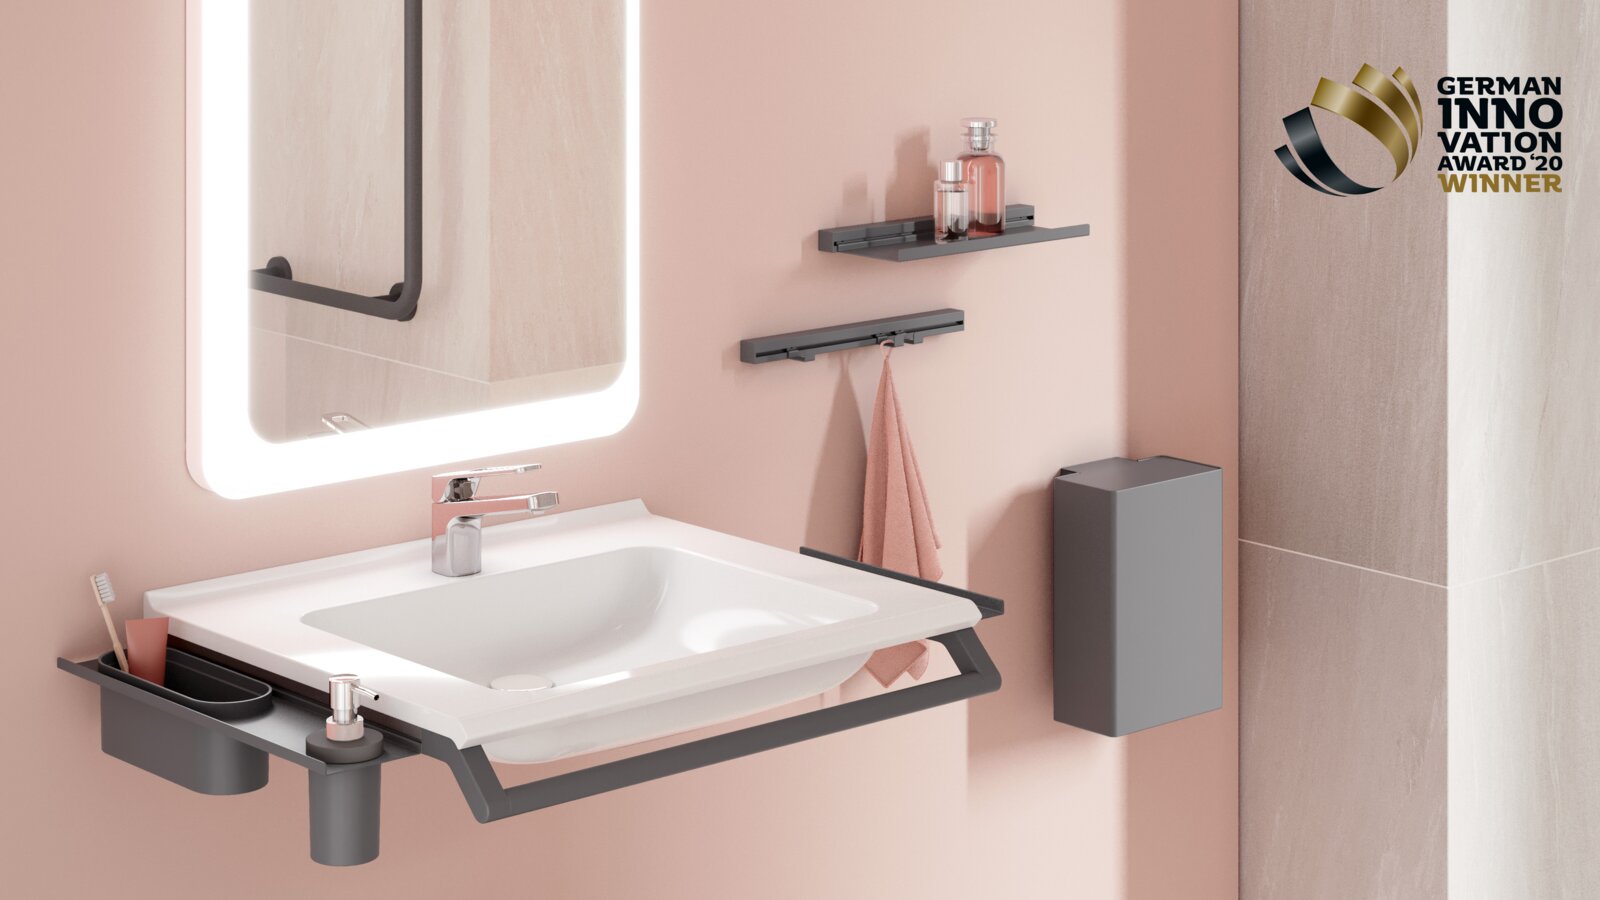 Modular washbasin with grab rail and shelves for bathroom utensils in matt dark grey stainless steel